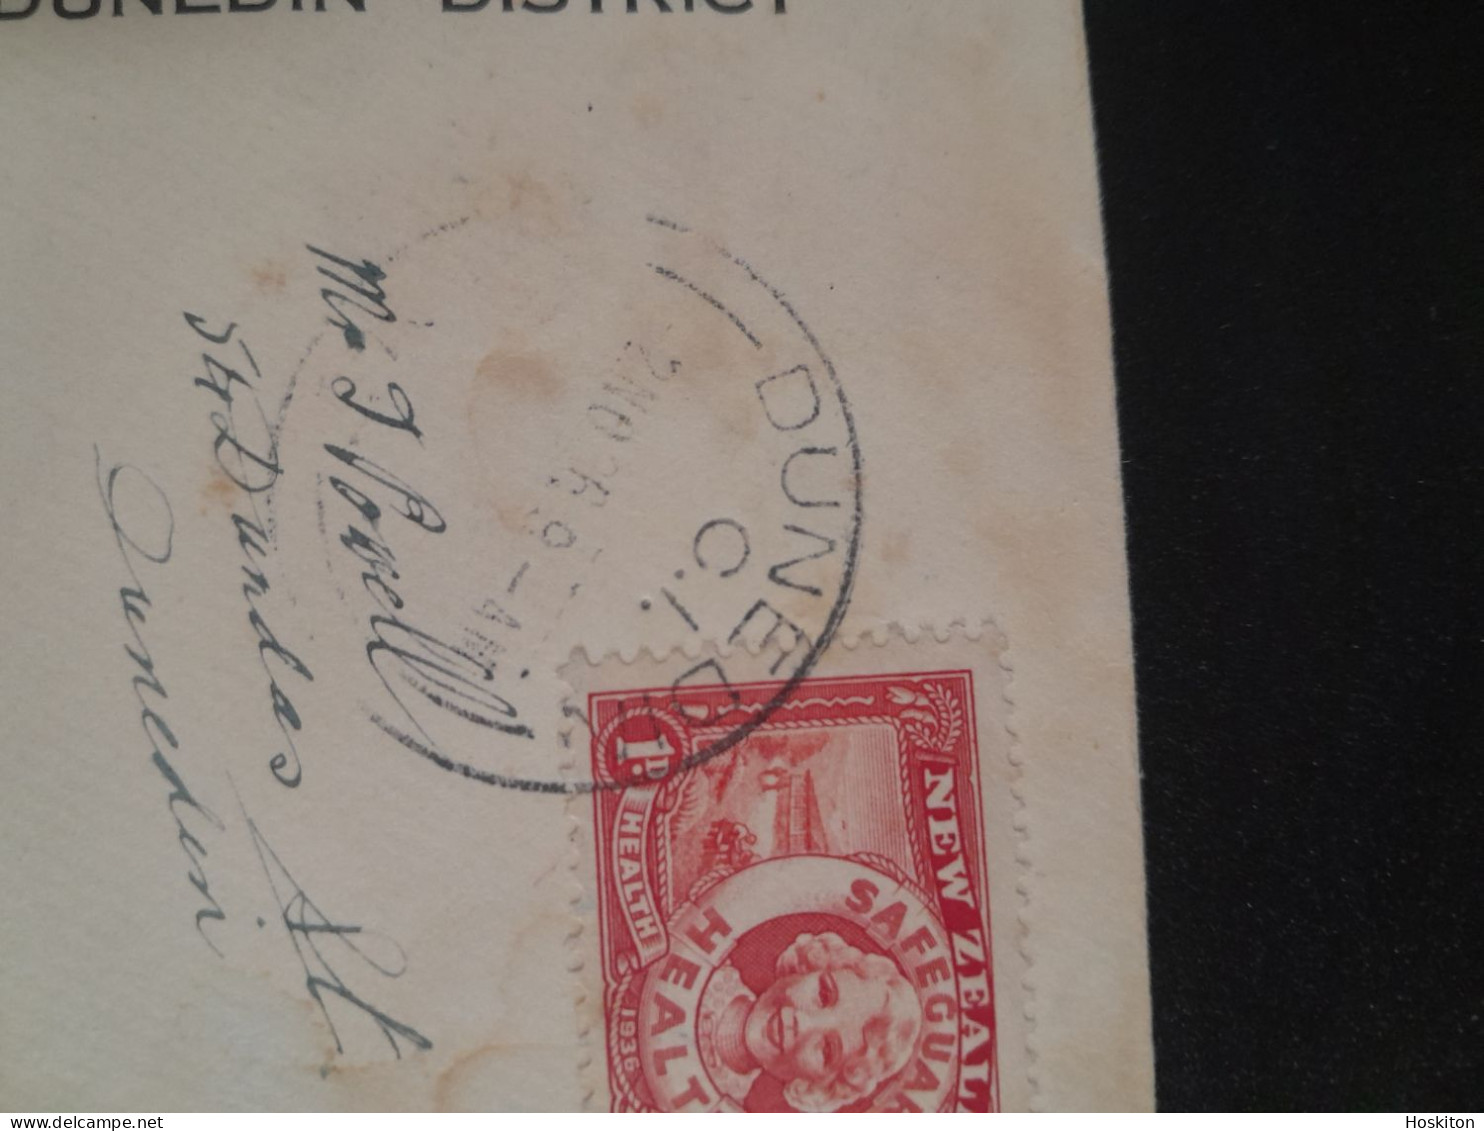 2 Nov 1936 Health Stamps For Health Camps - Cartas & Documentos